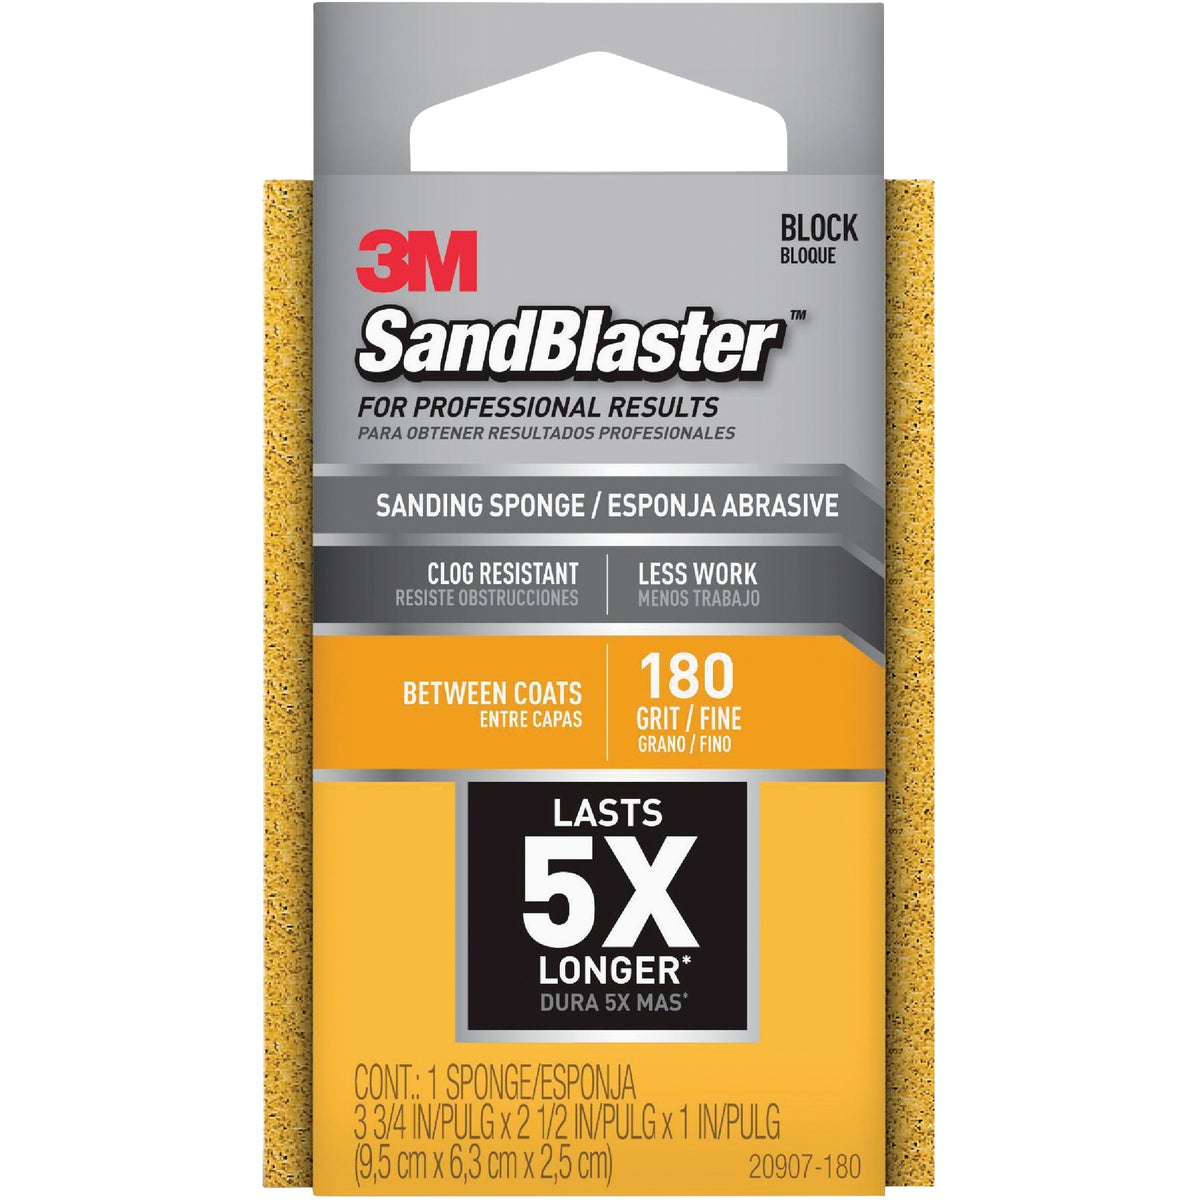 3M SandBlaster Between Coats 2-1/2 In. x 3-3/4 In. x 1 In. 180 Grit Fine Sanding Sponge